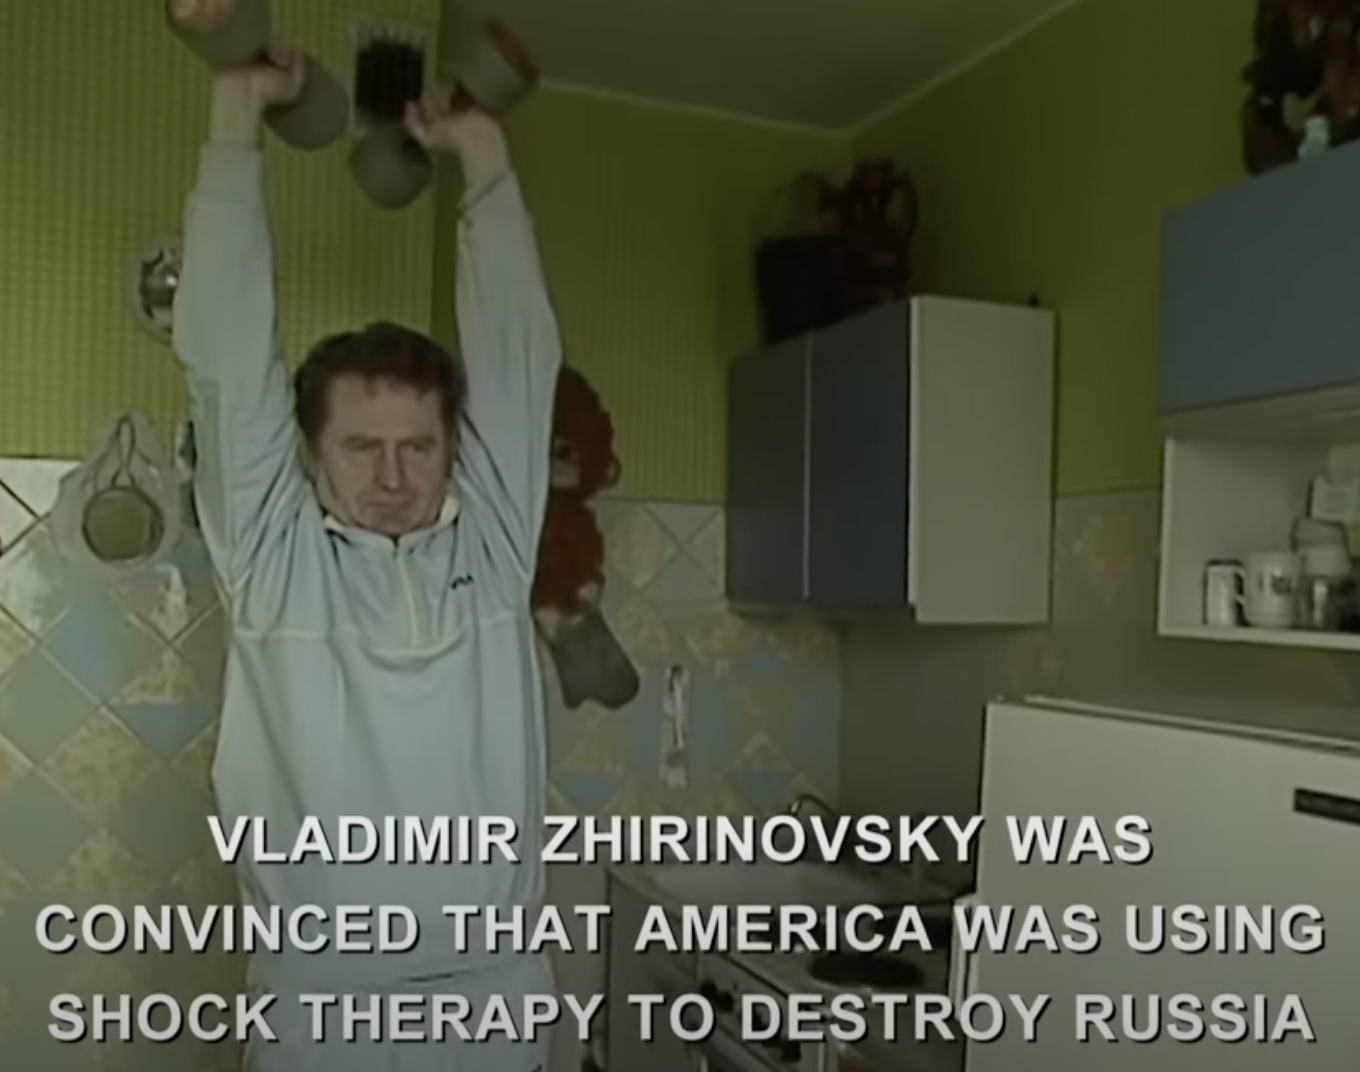 Zhirinovsky victim complex